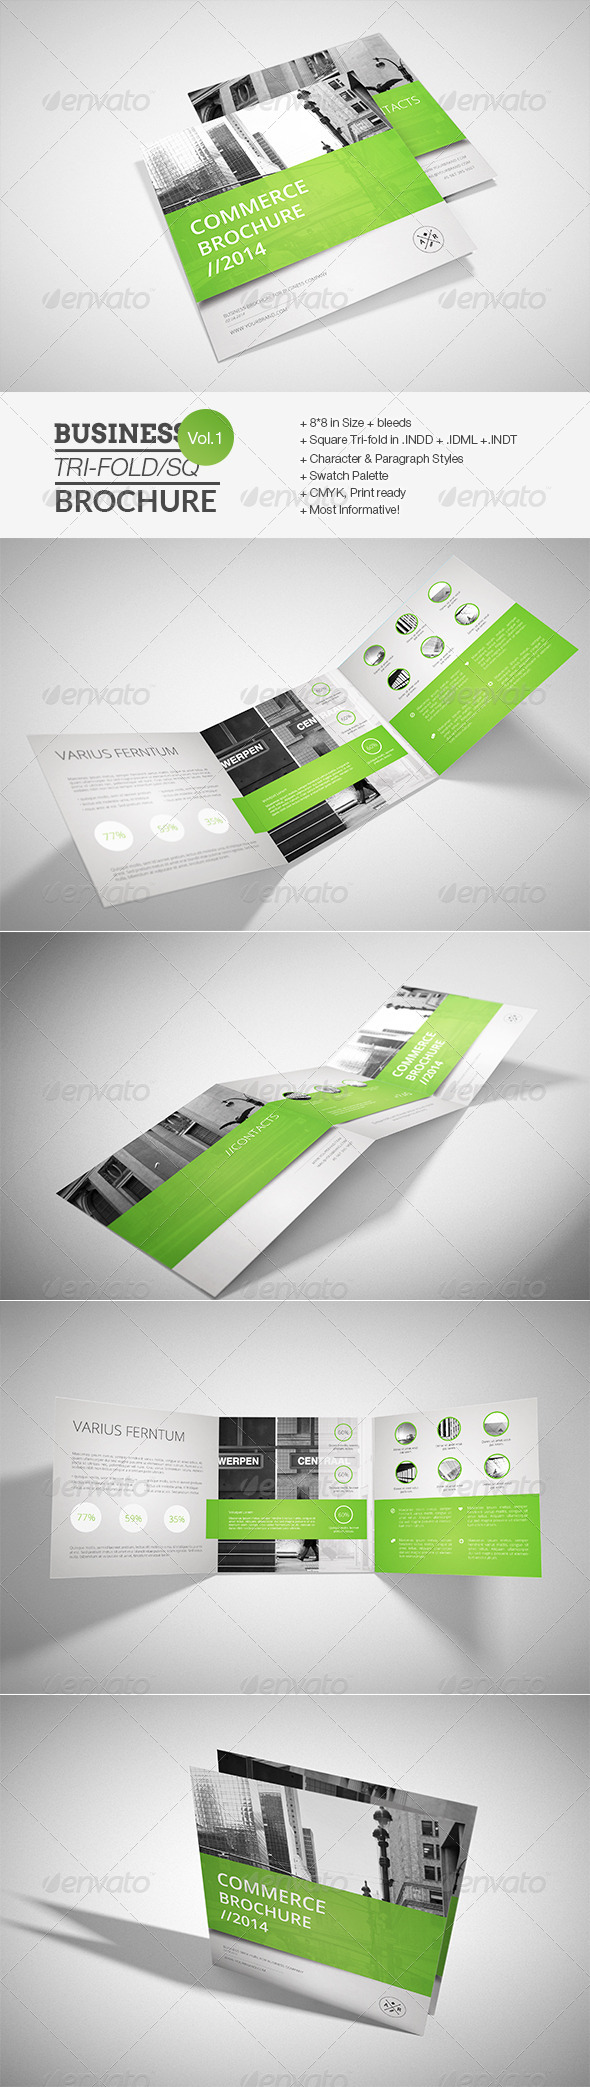 GraphicRiver Business Square Tri-fold Brochure 7664588